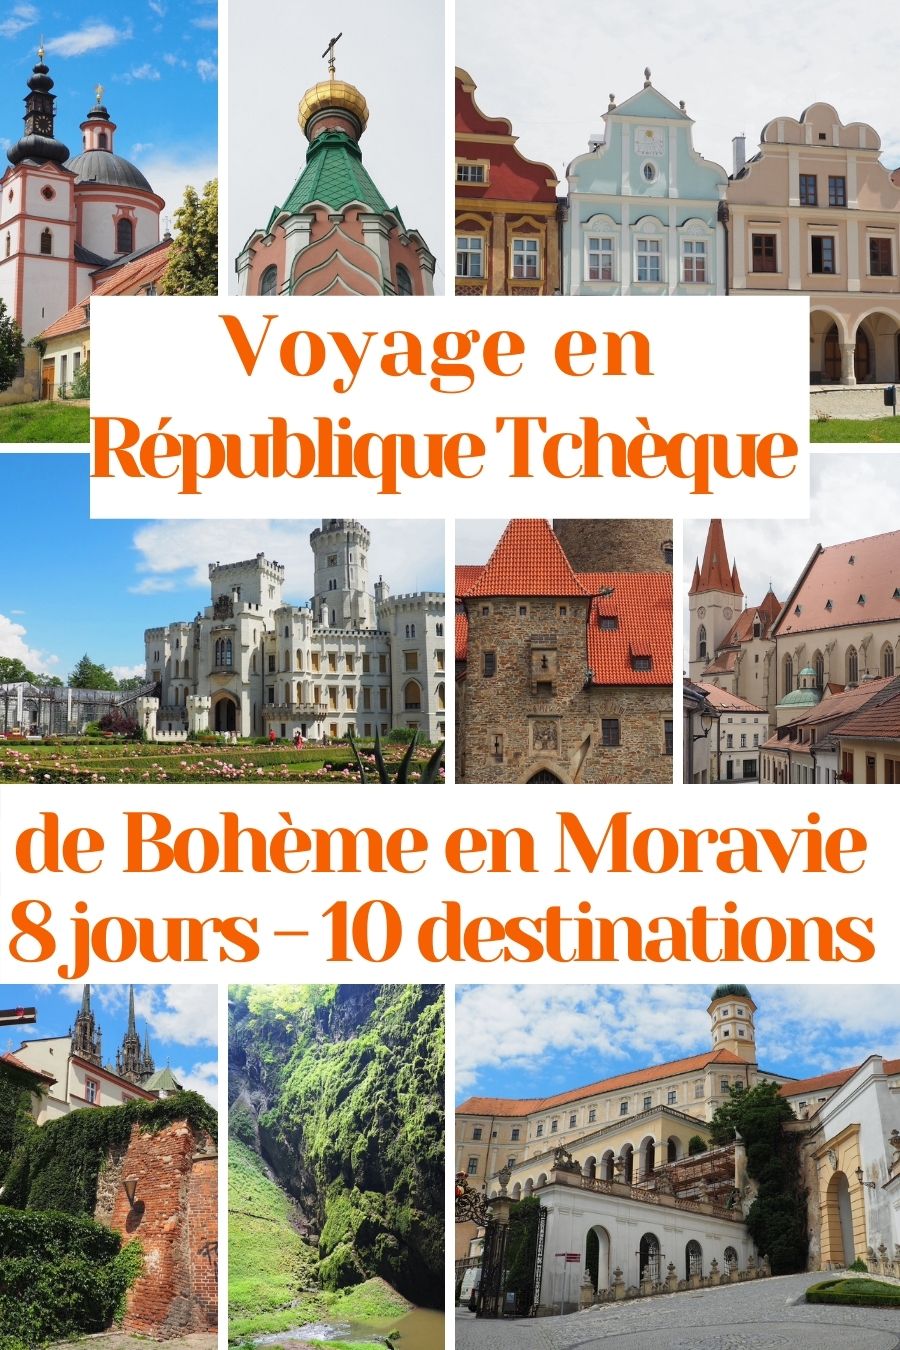 Liste des lieux à visiter en Moravie et en Bohème pour une semaine de voyage en République Tchèque: villes, châteaux et merveilles naturelles